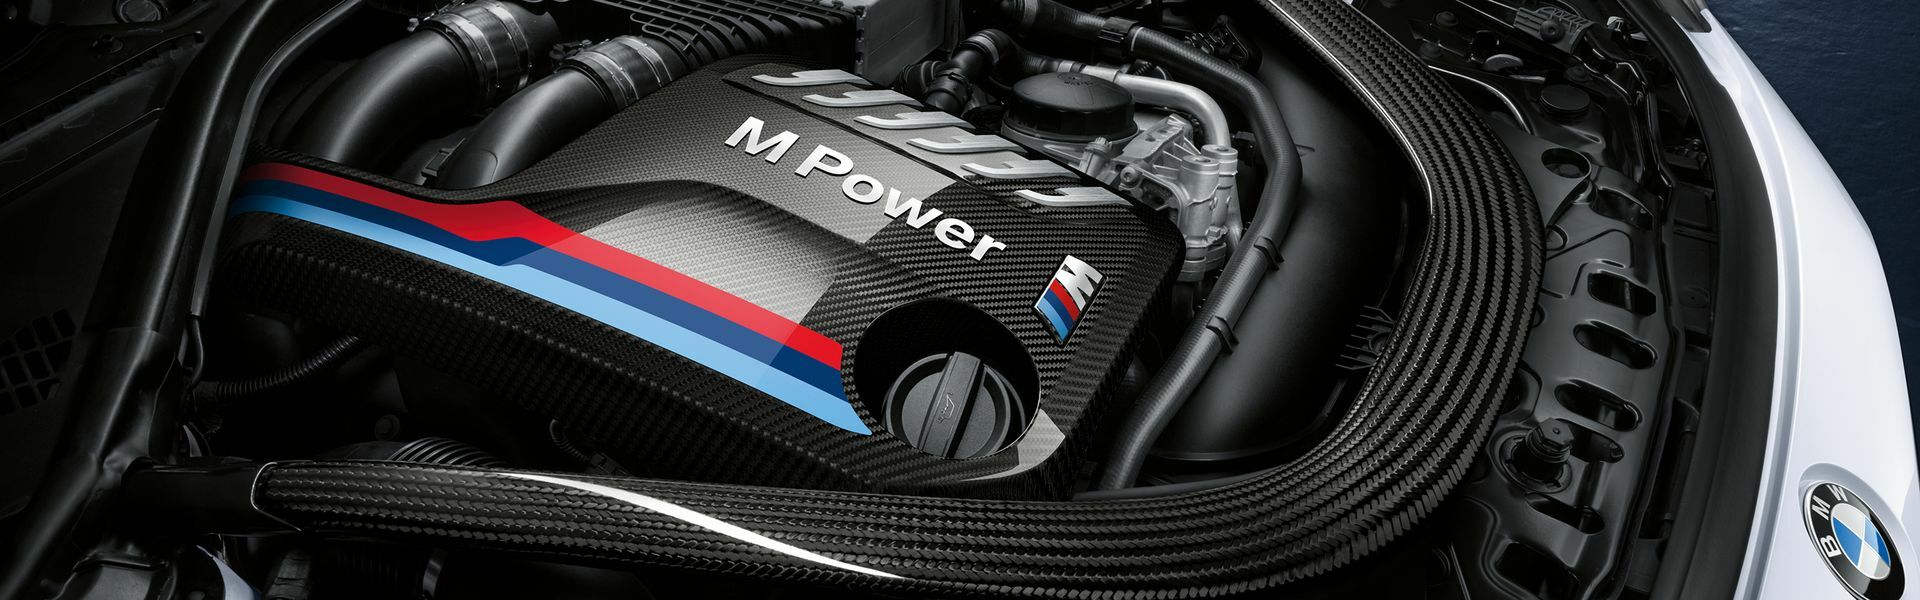 Zvýšení výkonu/ Softwarové úpravy/ Drobné performance díly pro automobil BMW M140i F20 F21